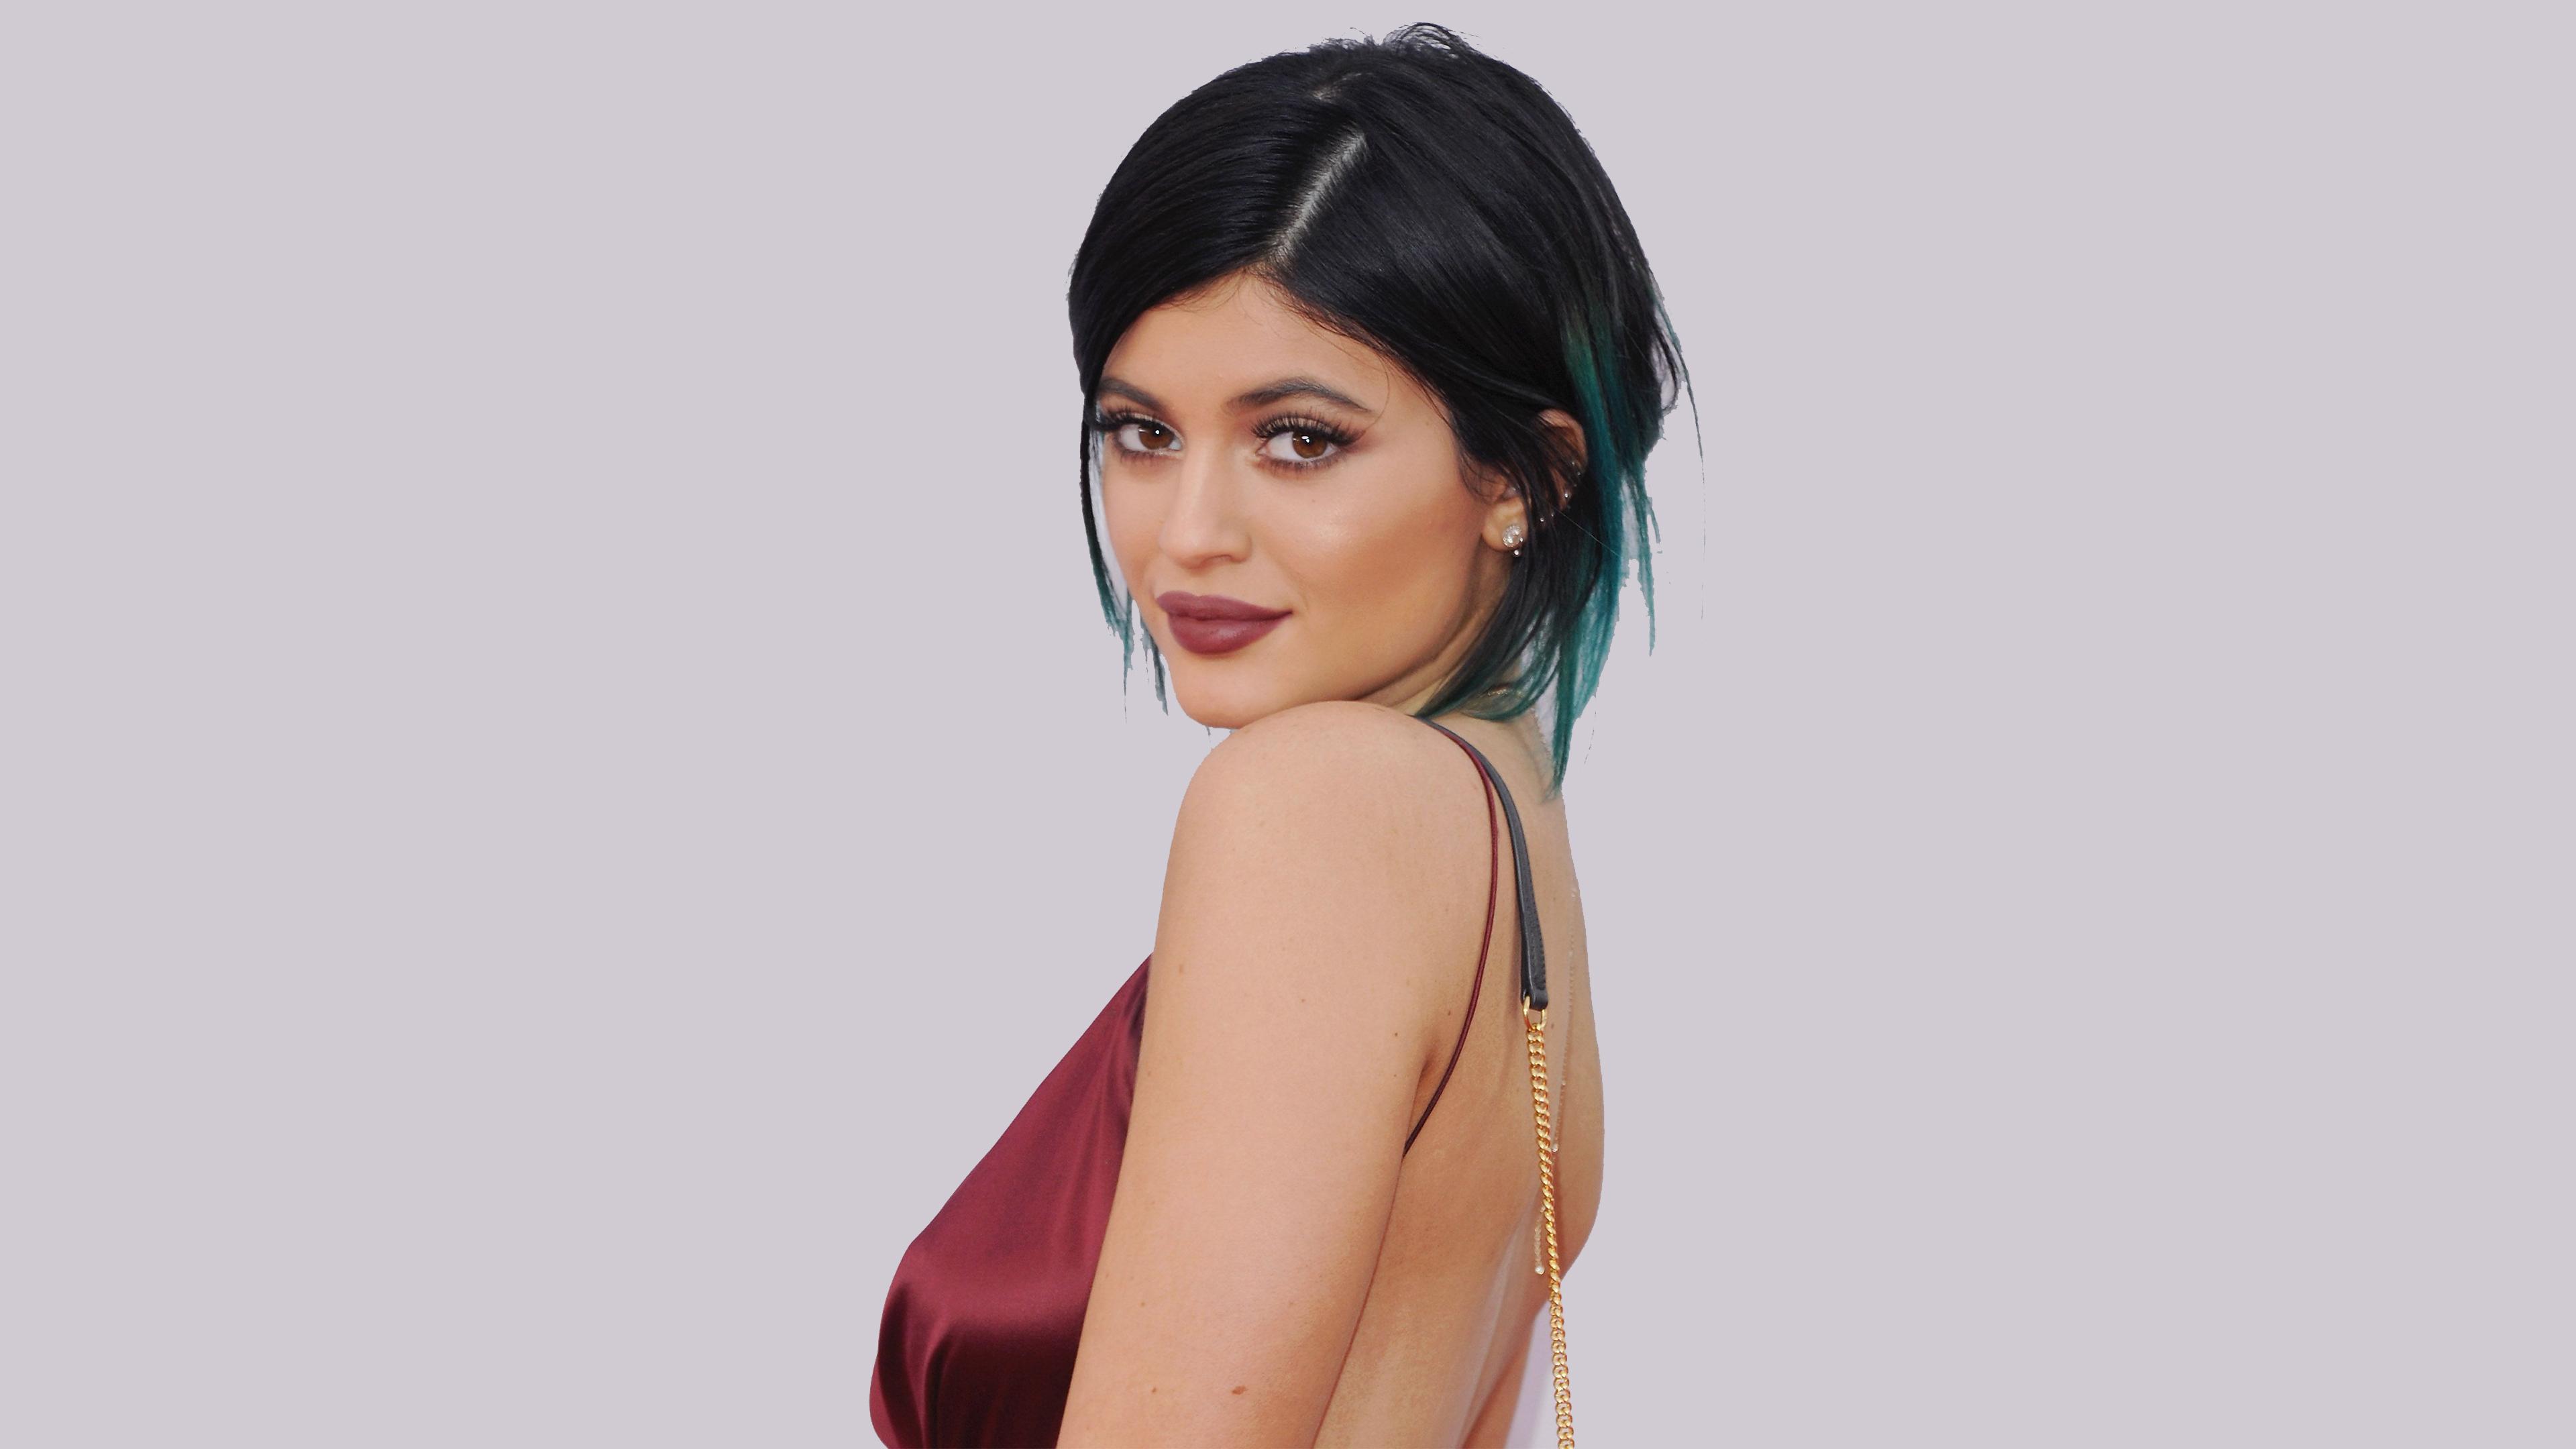 Wallpaper 4k Kylie Jenner 2019 4k Latest 4k Wallpaper